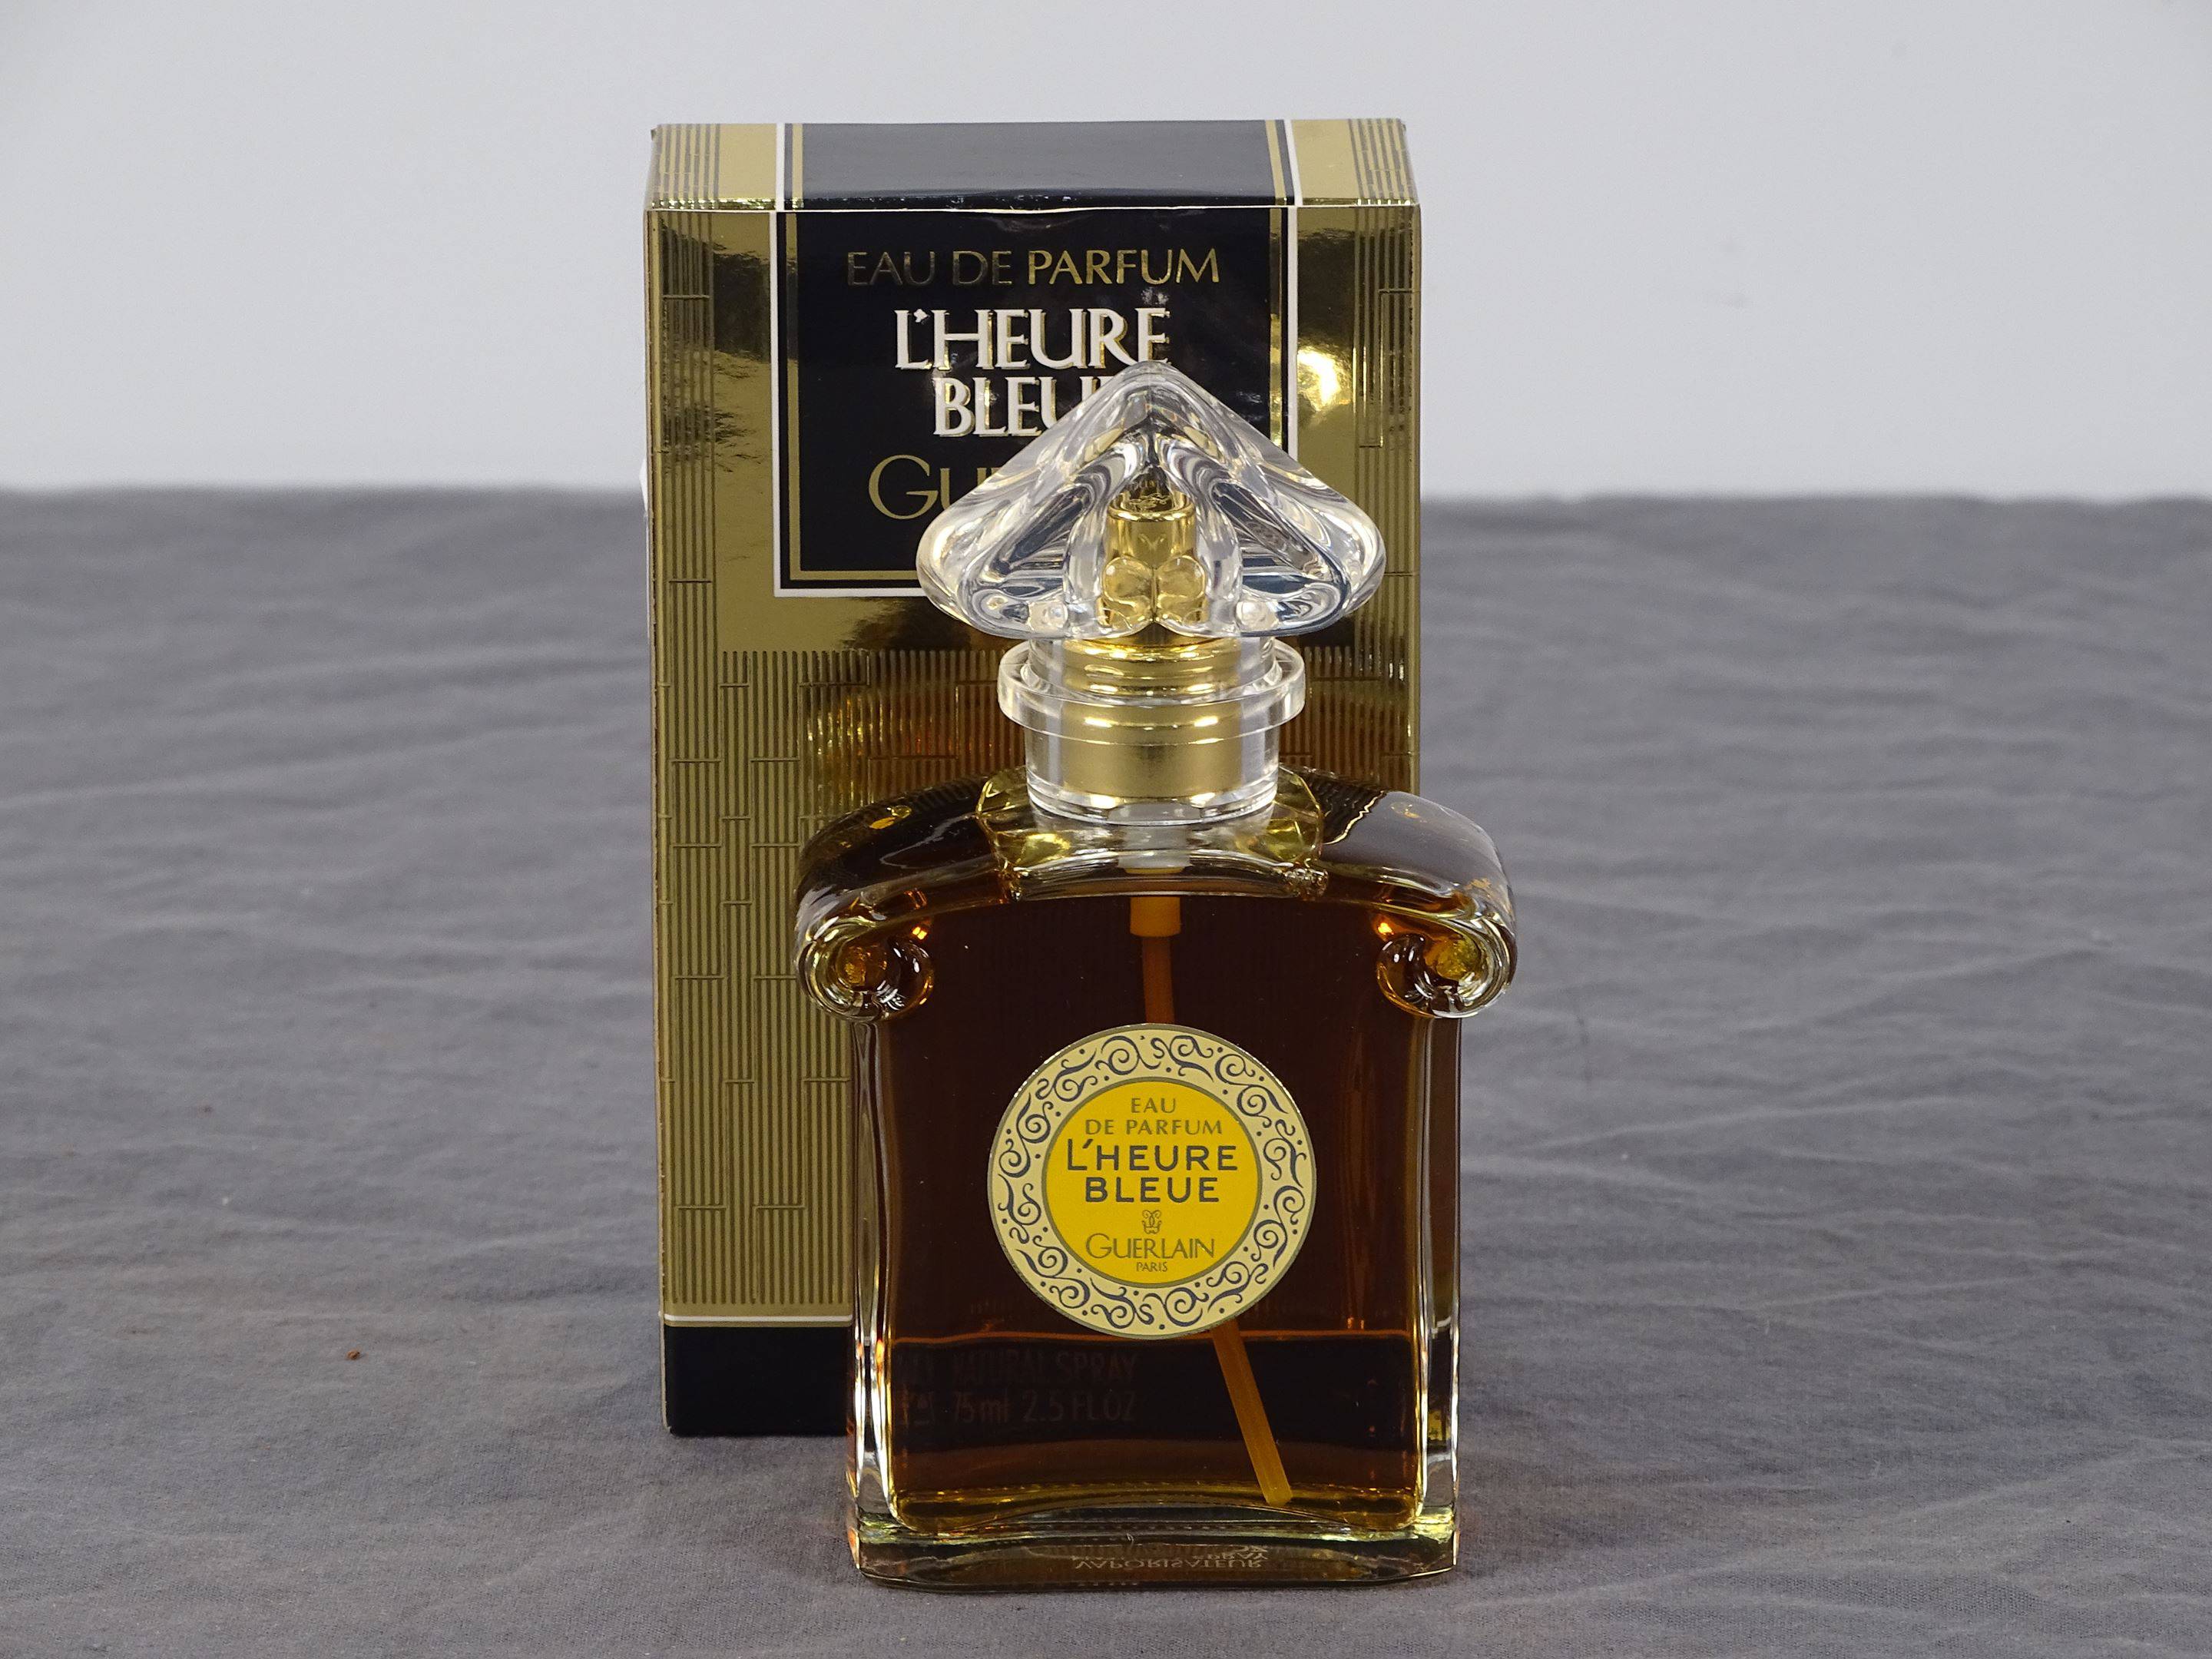 Guerlain L'heure Bleue Perfume Bottle Auction